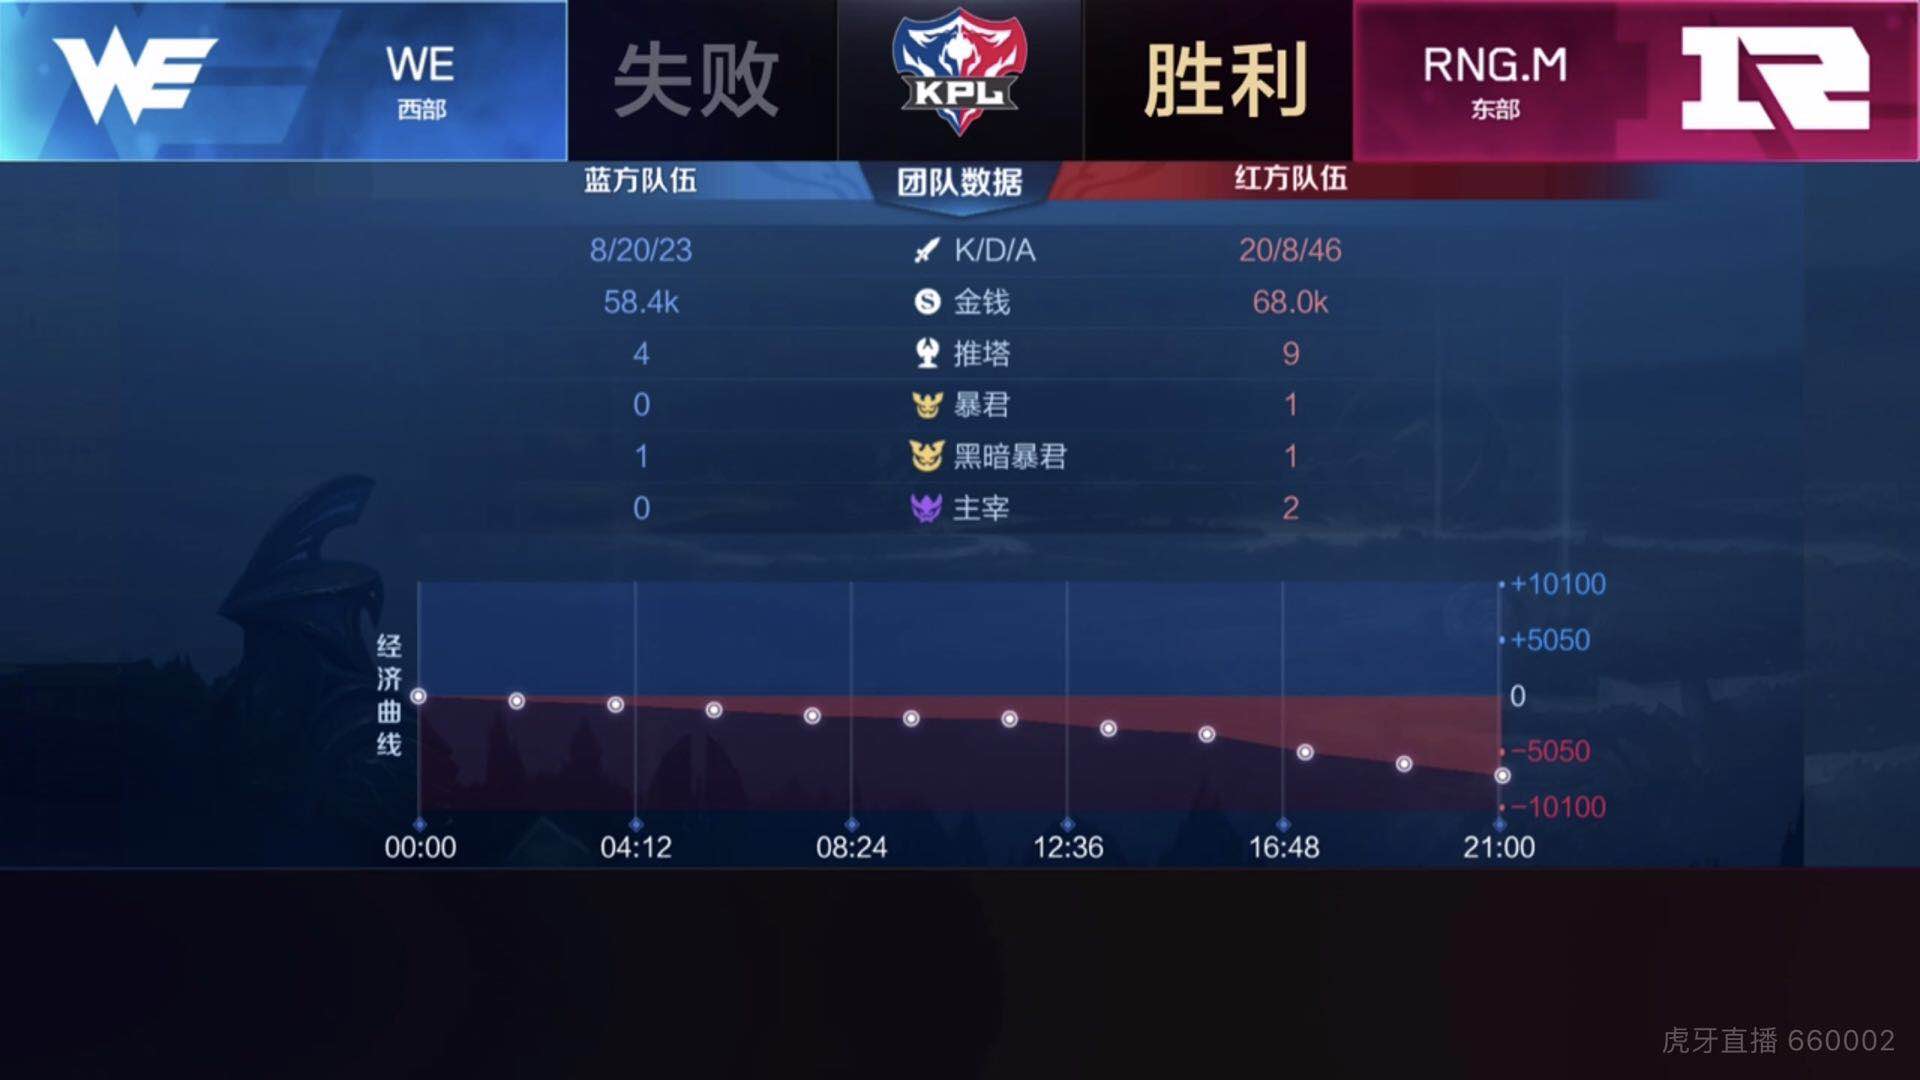 [战报] RNG.M连下三城击败WE 向胜者组发起冲击